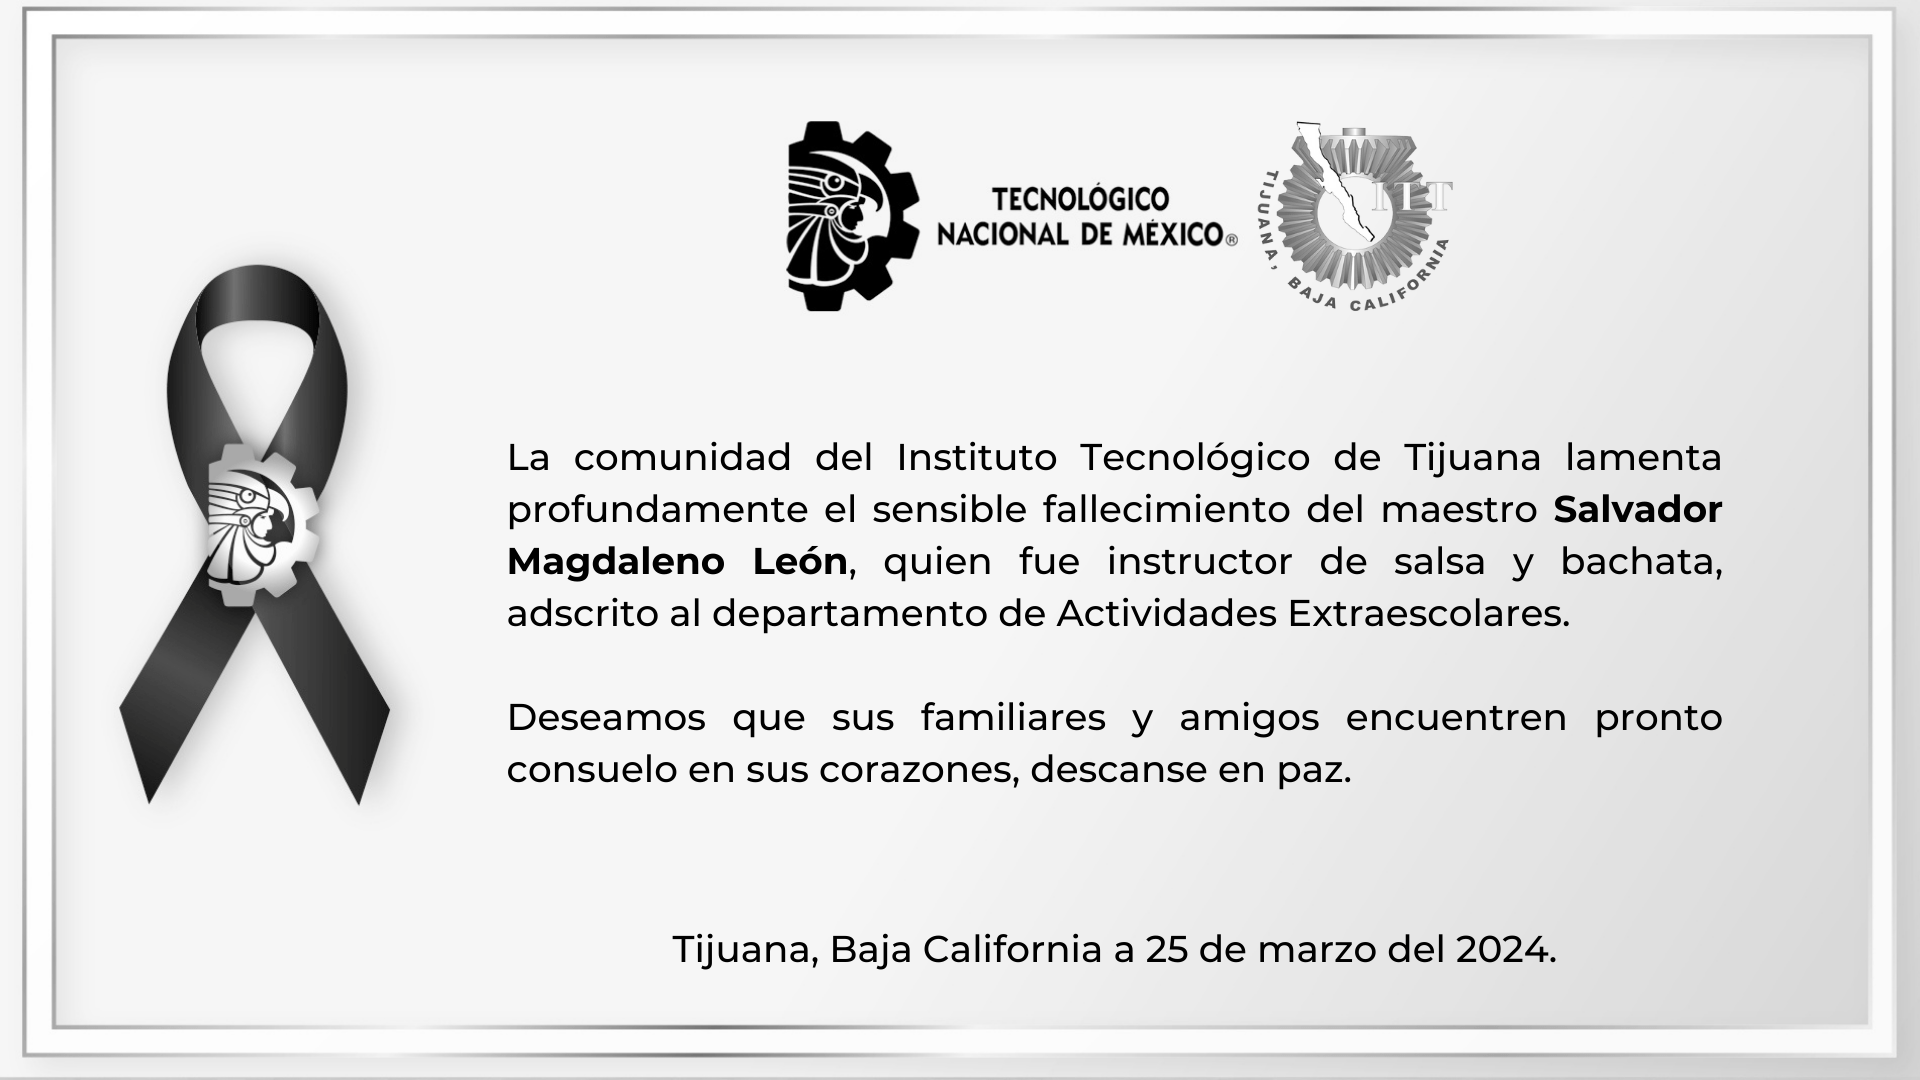 La comunidad del Instituto Tecnológico de Tijuana lamenta profundamente el sensible fallecimiento del maestro Salvador Magdaleno León